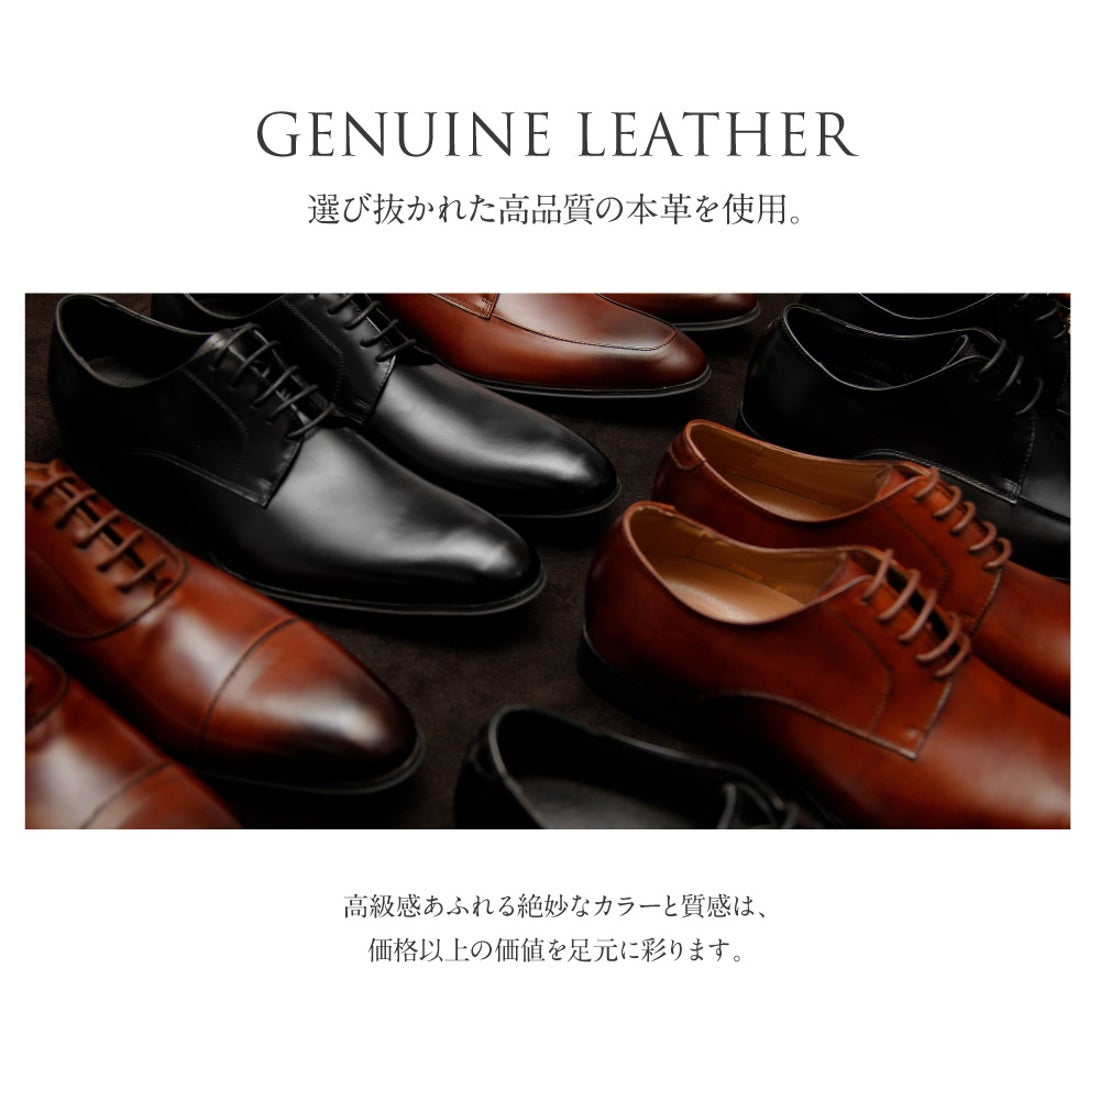 ギオネ GUIONNET ビジネスシューズ メンズ 革靴 日本製 メンズビジネス